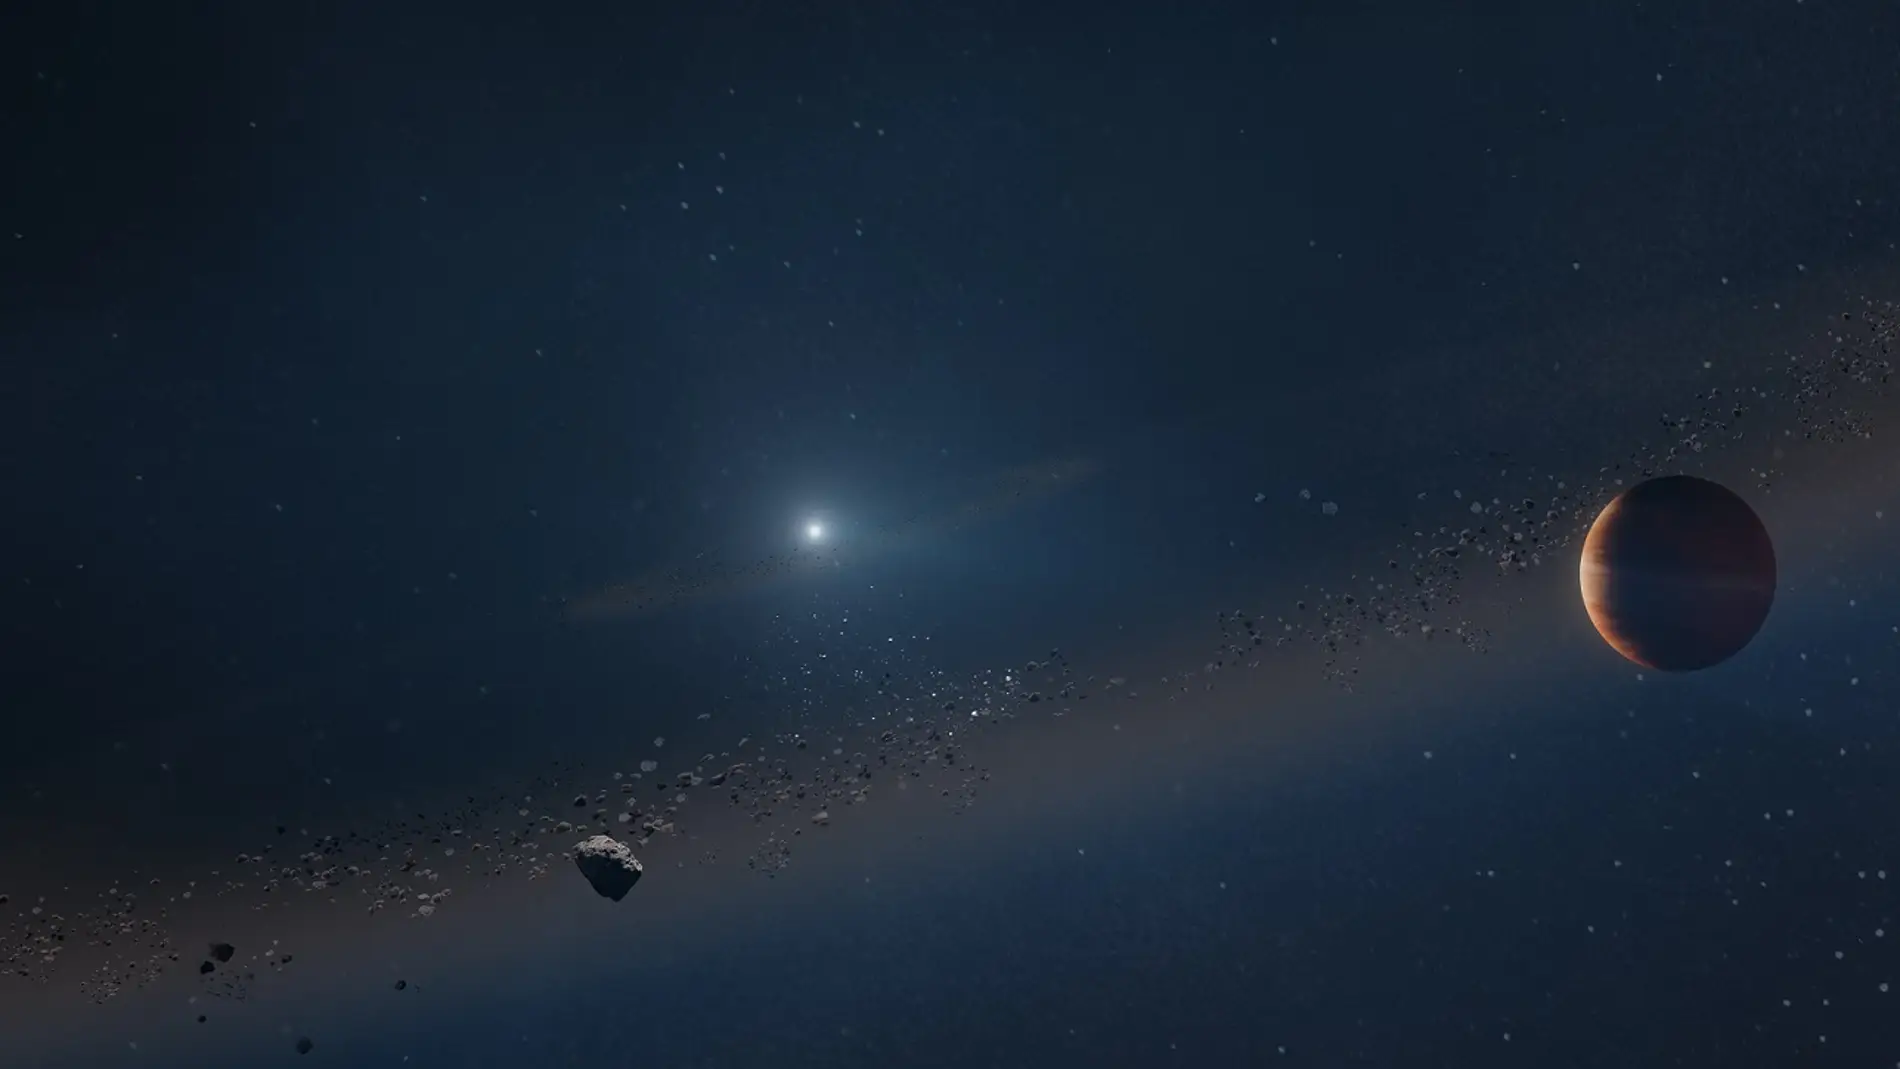 Exoplaneta orbitando una enana blanca